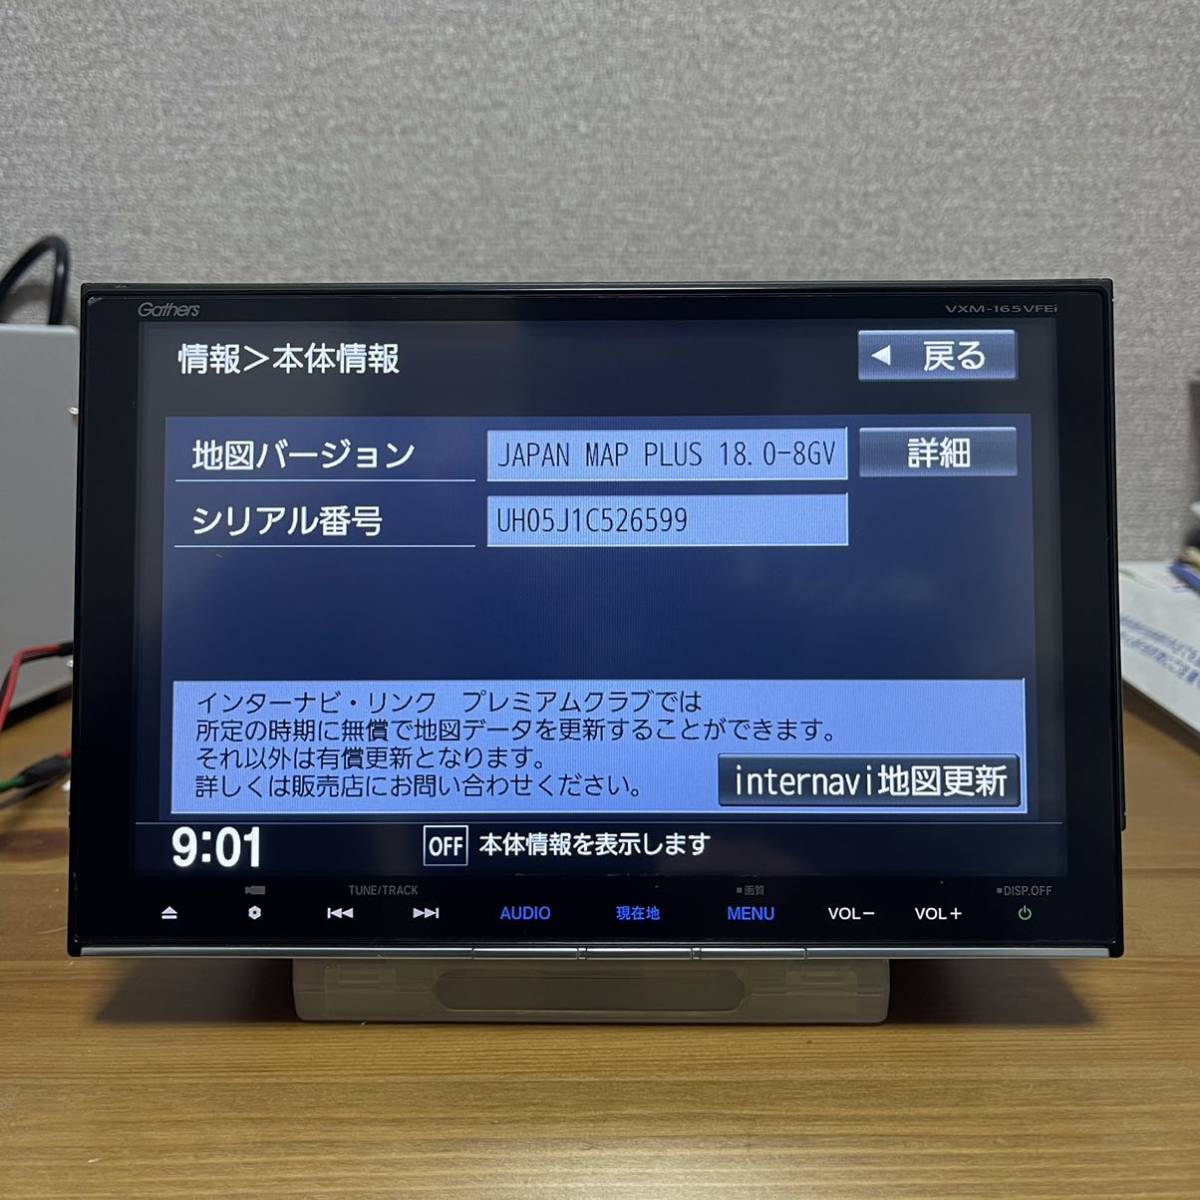 ホンダ ギャザーズ 純正 ナビ VXM-165VFEI 地デジ(フルセグ) CD USB